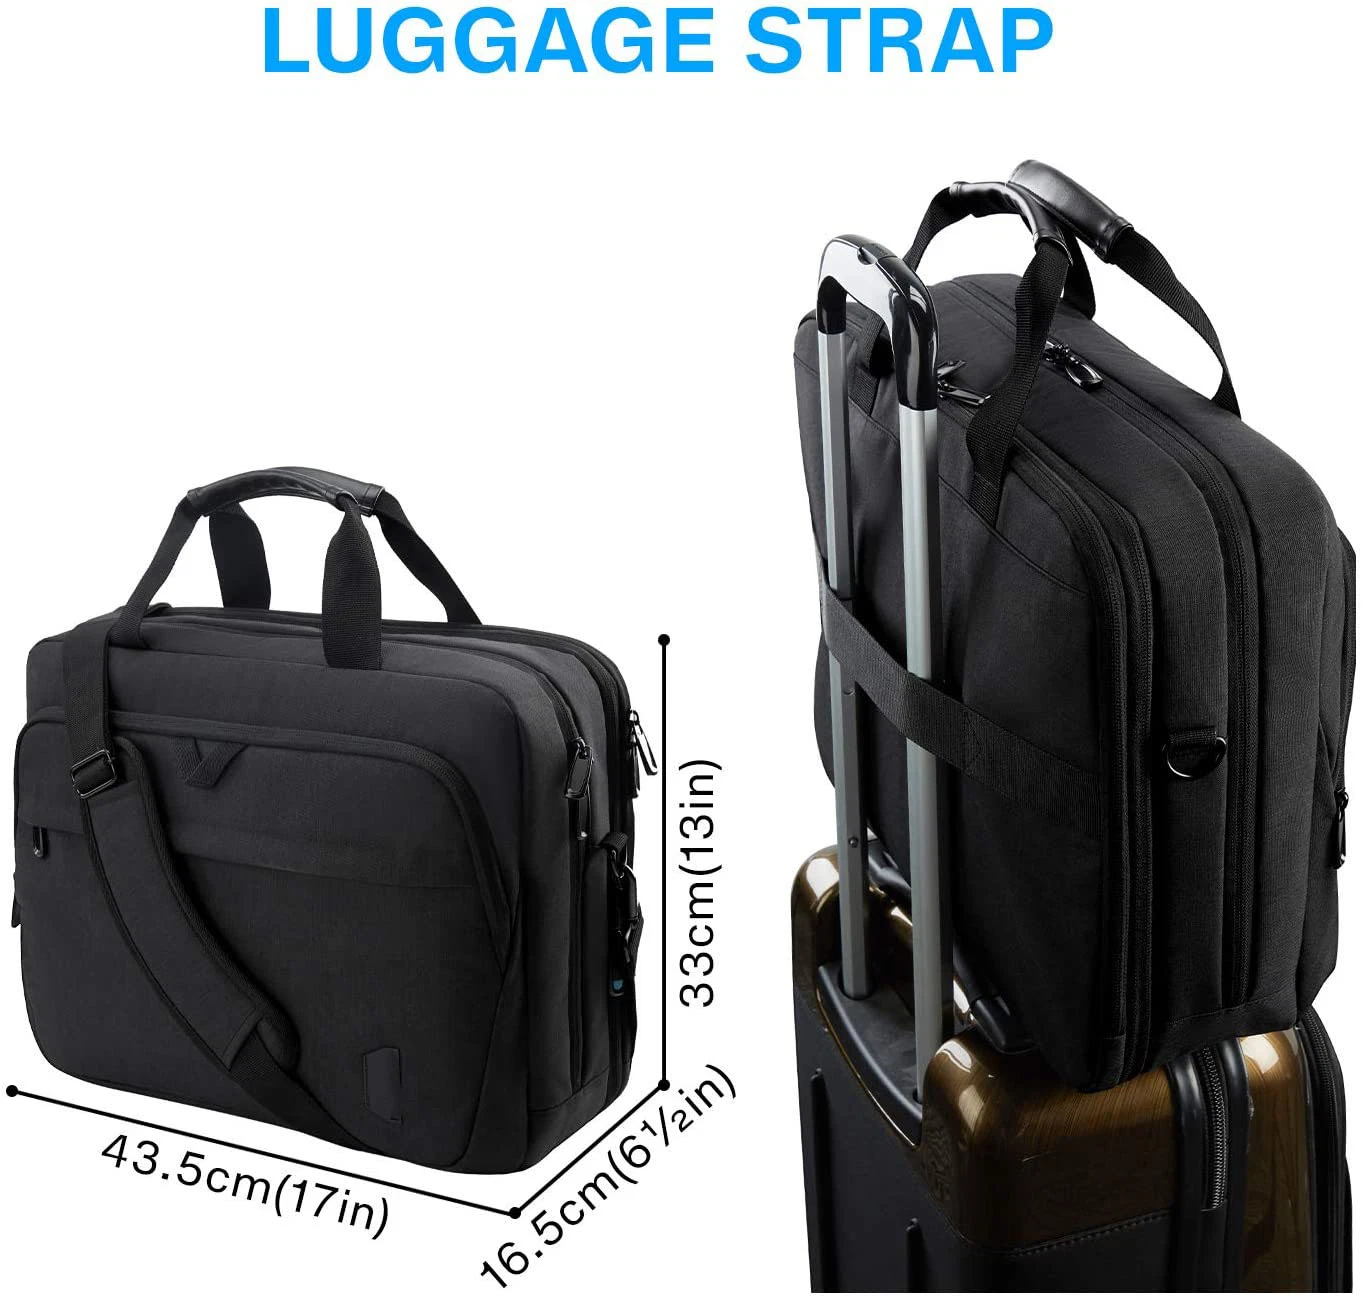 17.3 Inch Laptop Bag Expandable Briefcase, Computer Bag Men Women, Laptop Shoulder Bag, Work Bag Business Travel Office Bag